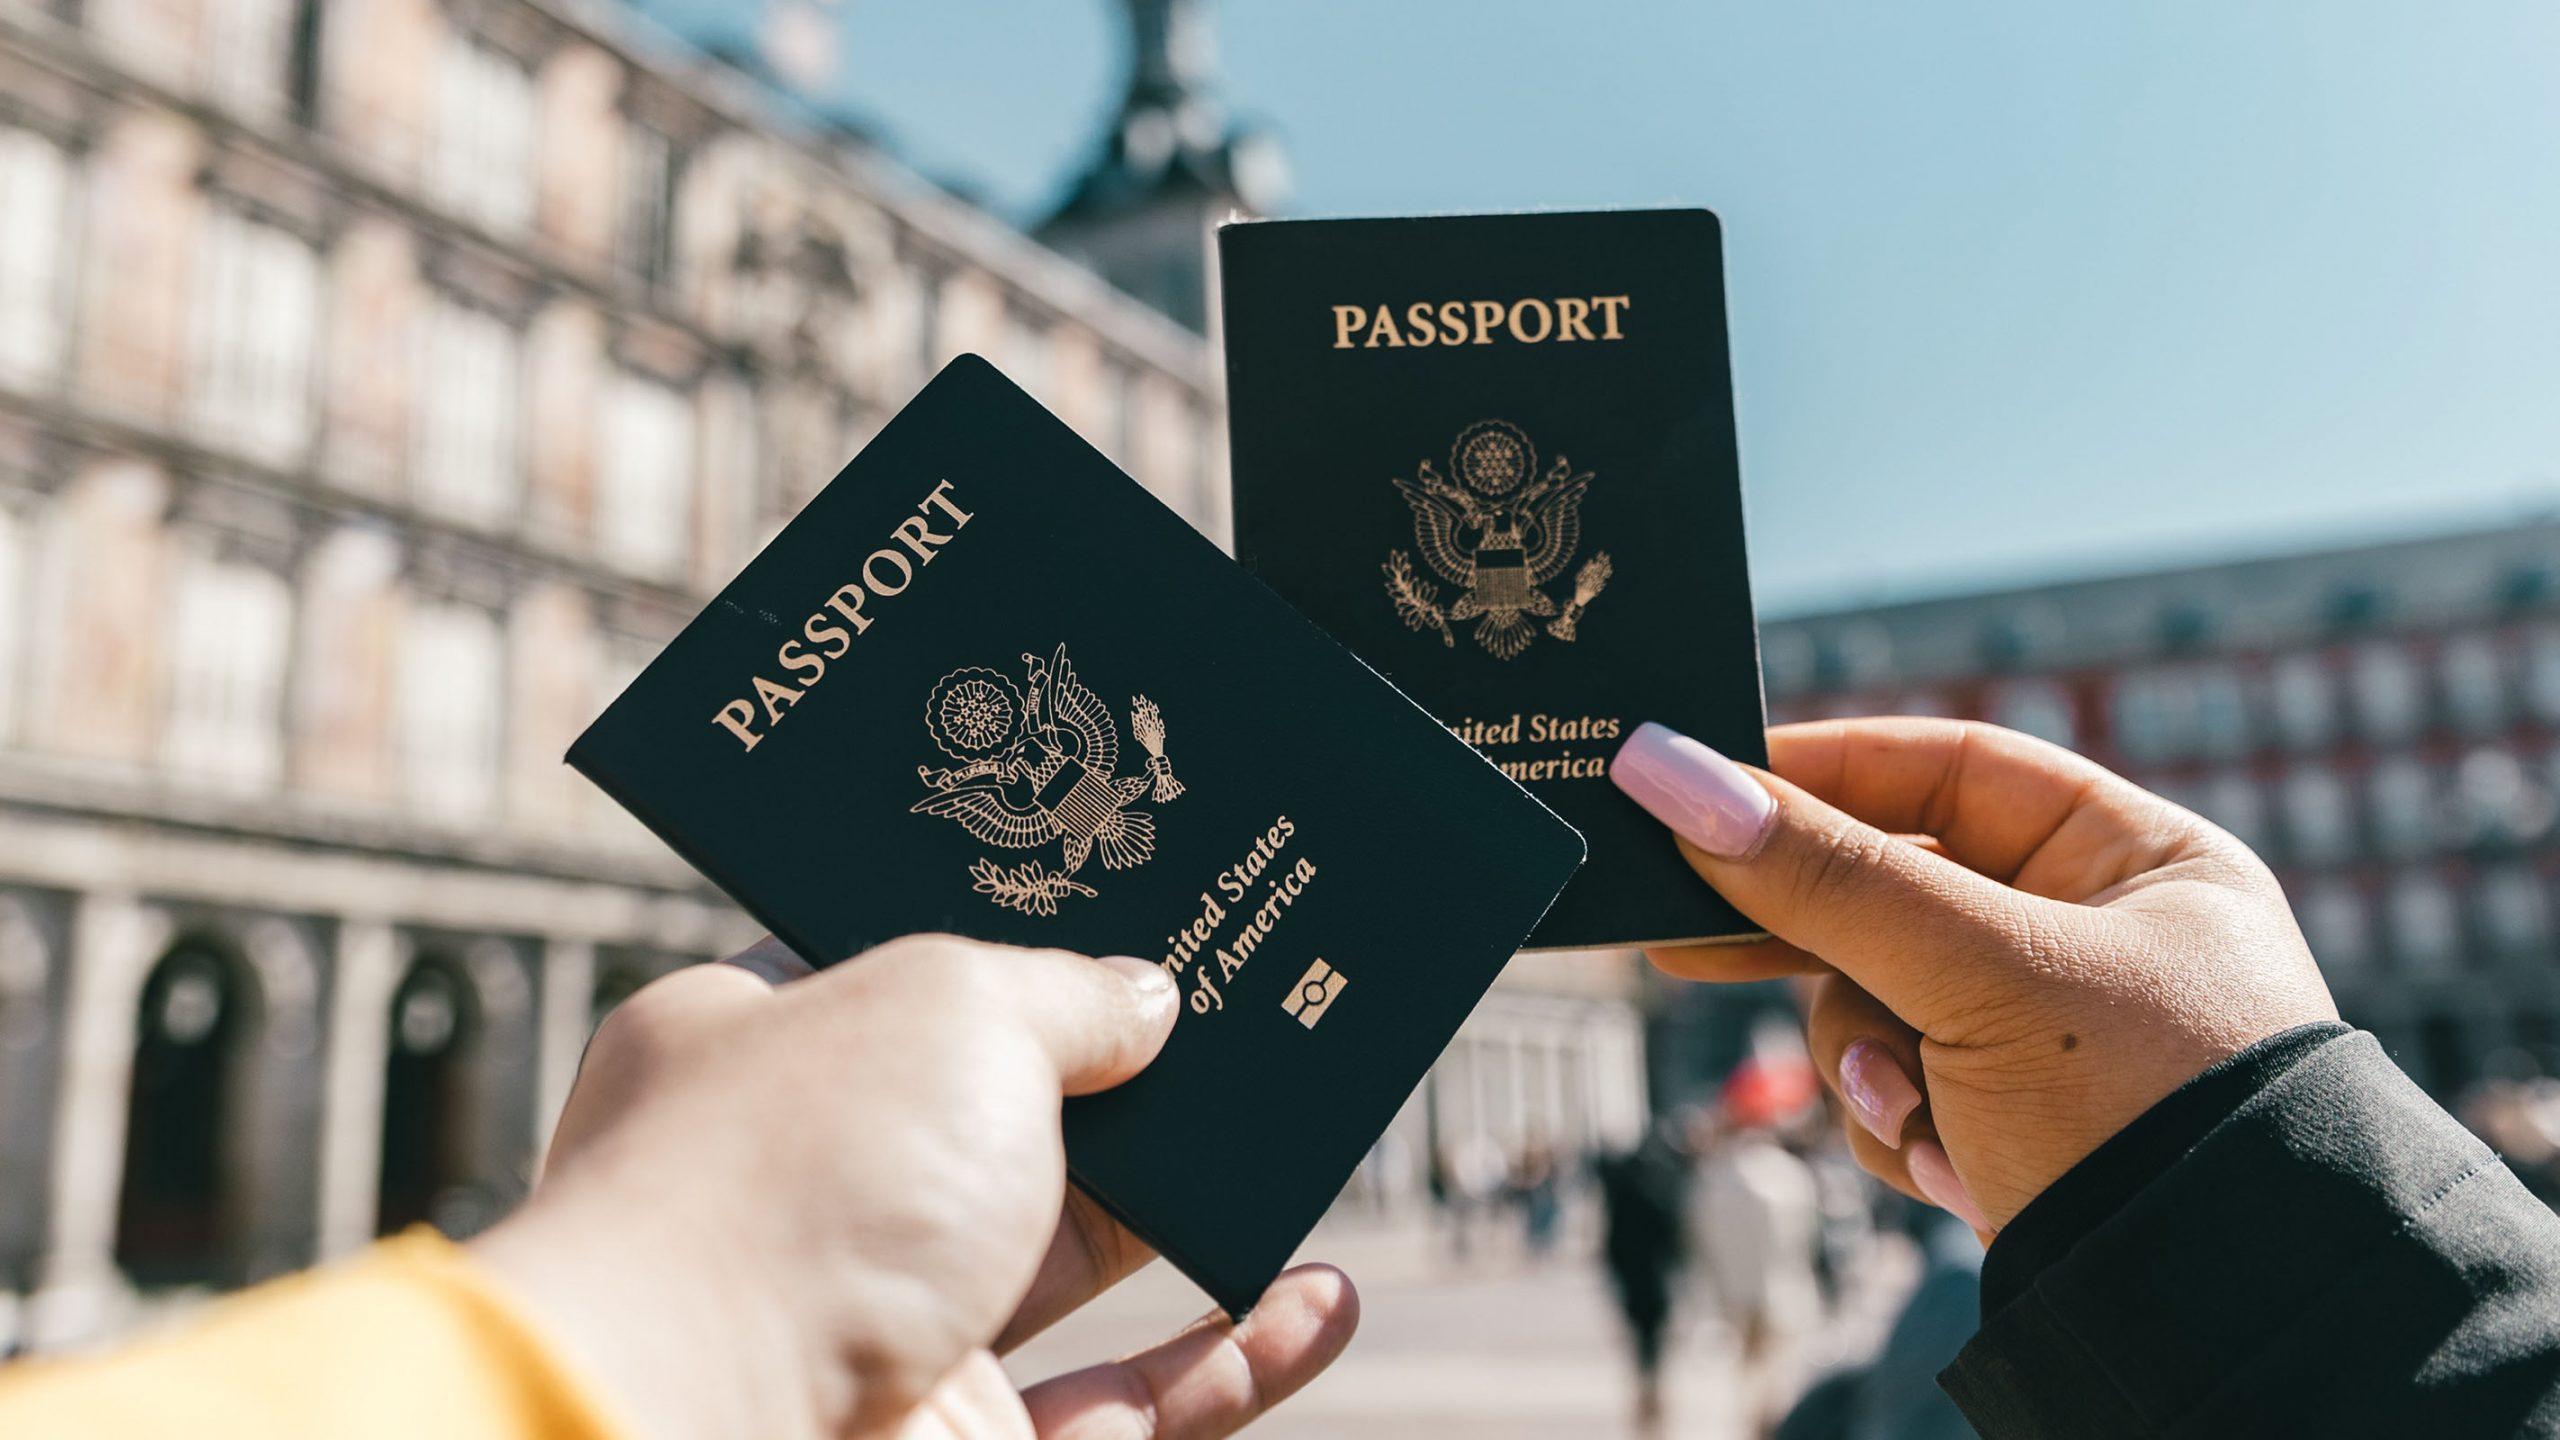 墨西哥国家签证护照旅行签证 向量例证. 插画 包括有 自定义, 墨水, 护照, 移民, 框架, 冒险家 - 257599996